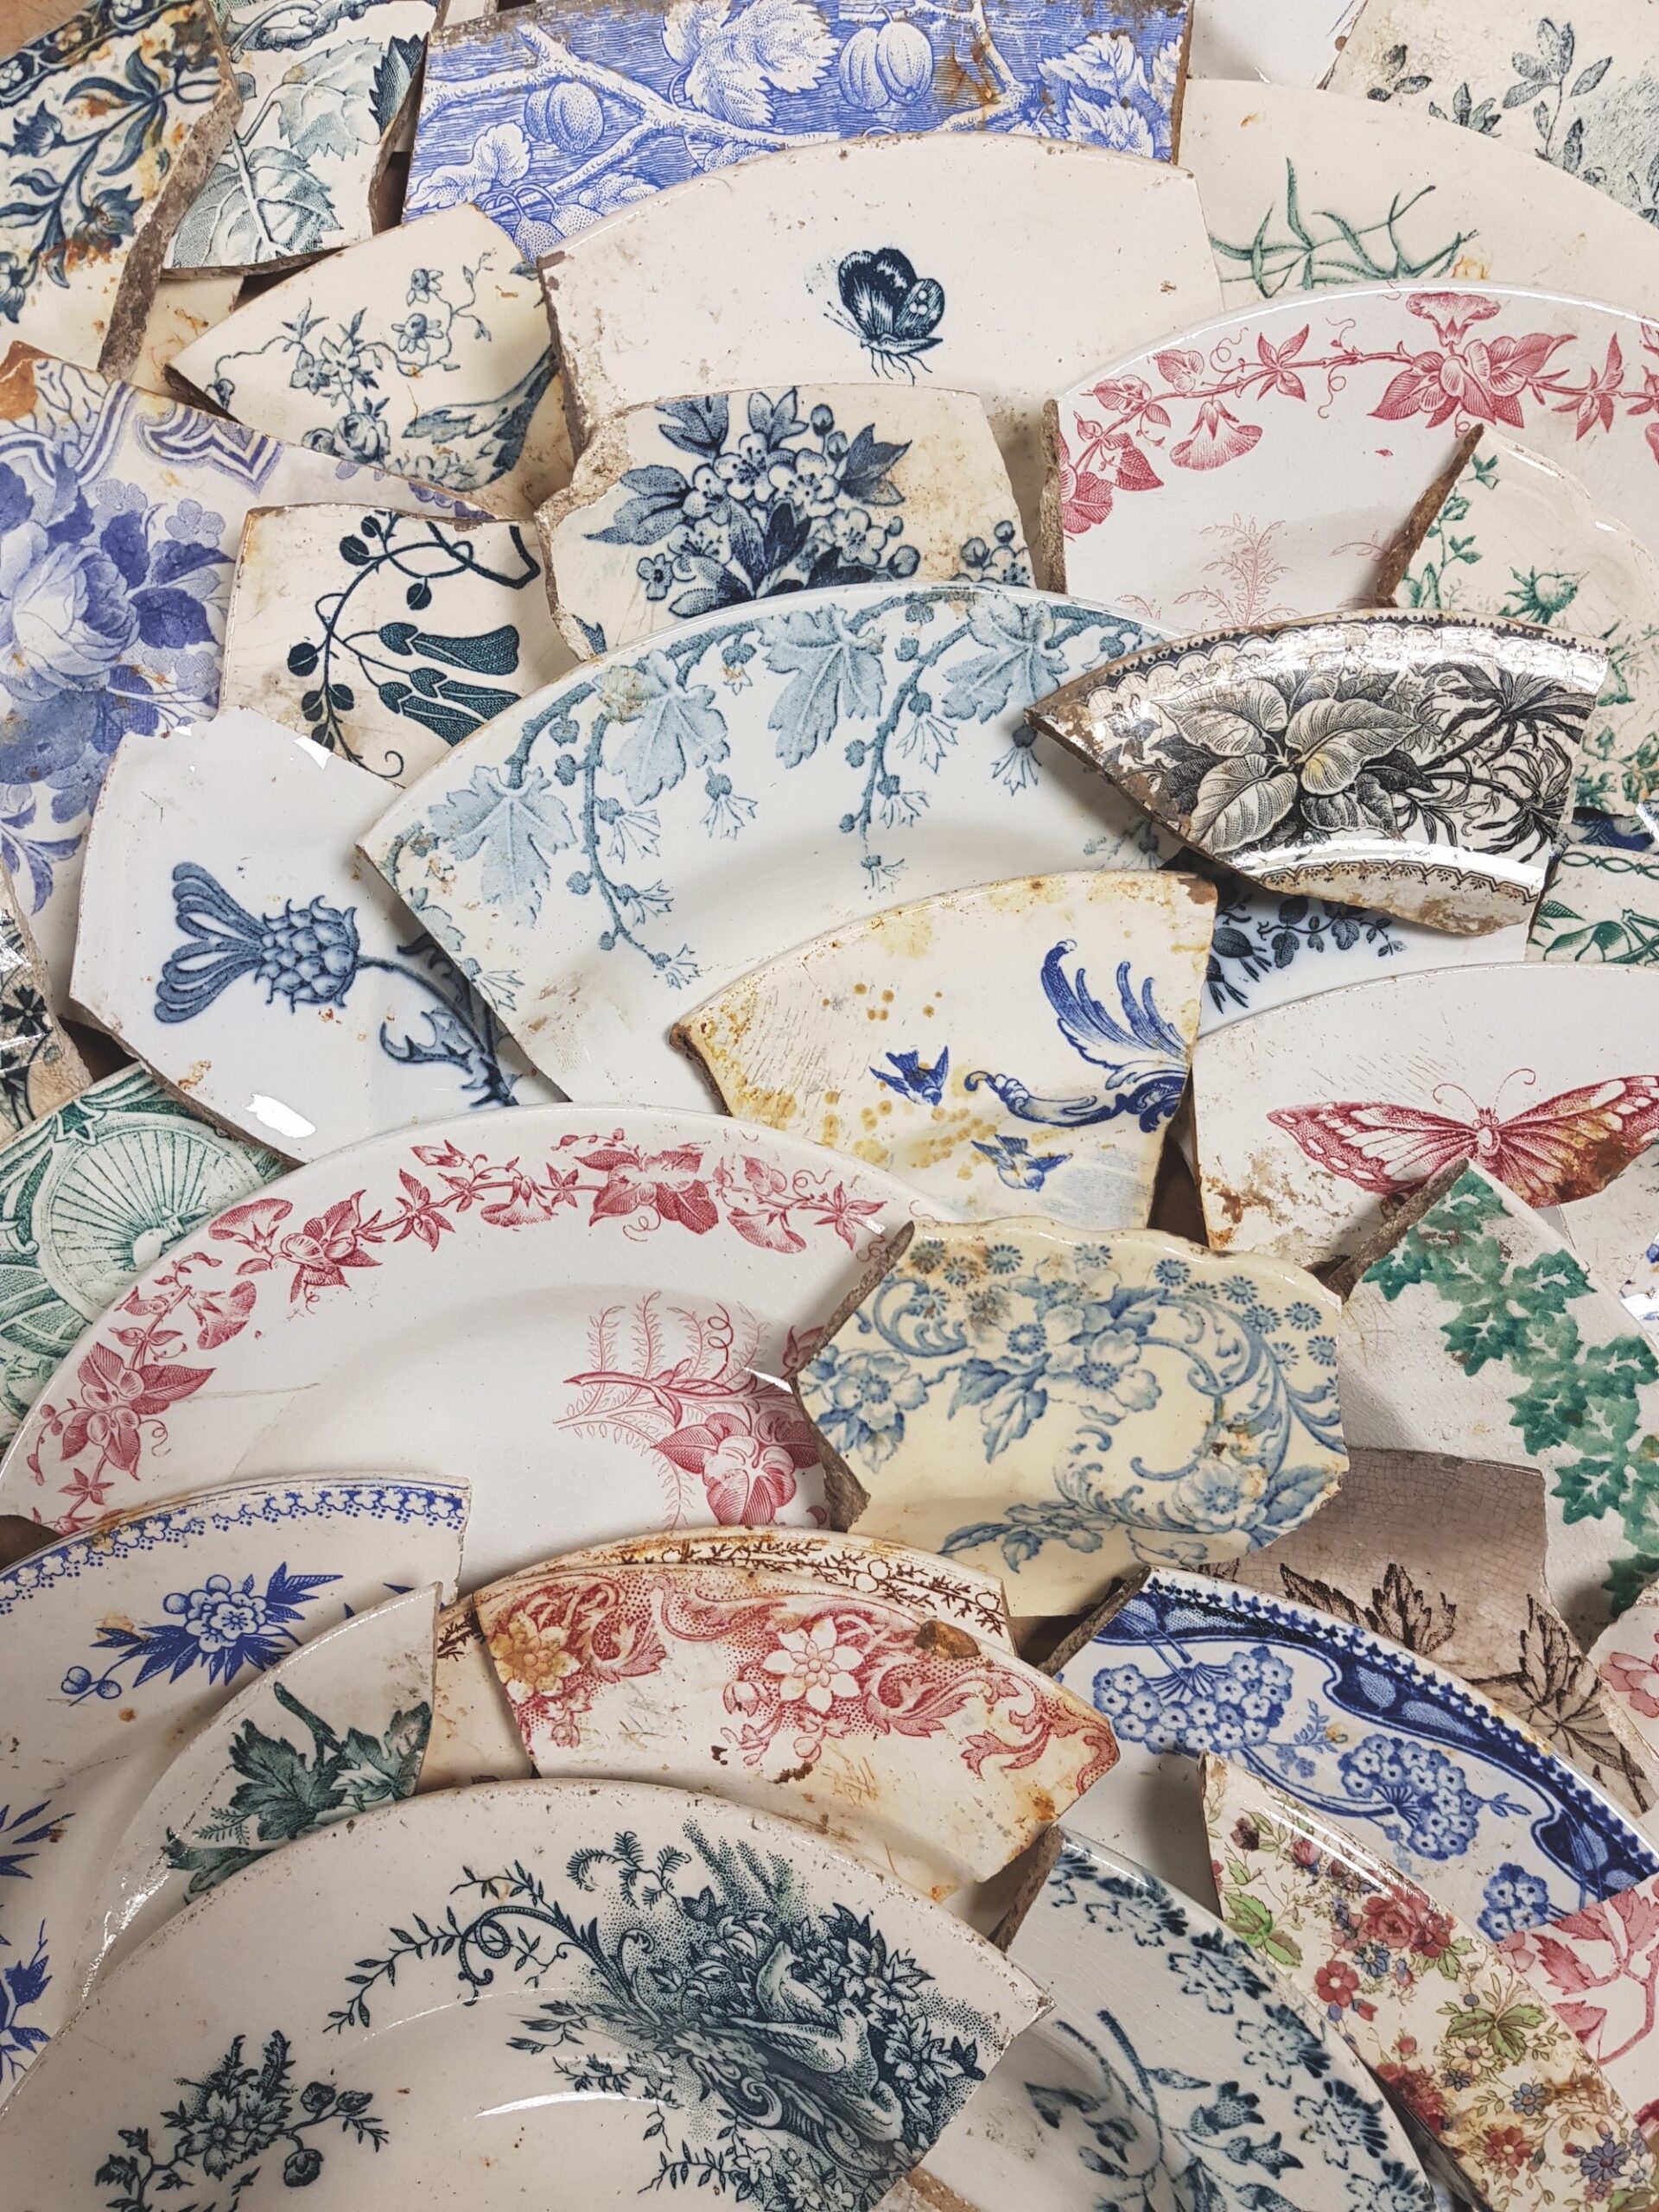 Le règne de la faïence fine : ces fragments de vaisselles de table témoignent du succès rencontré par ces produits aux décors imprimés. © Alban Horry, Inrap